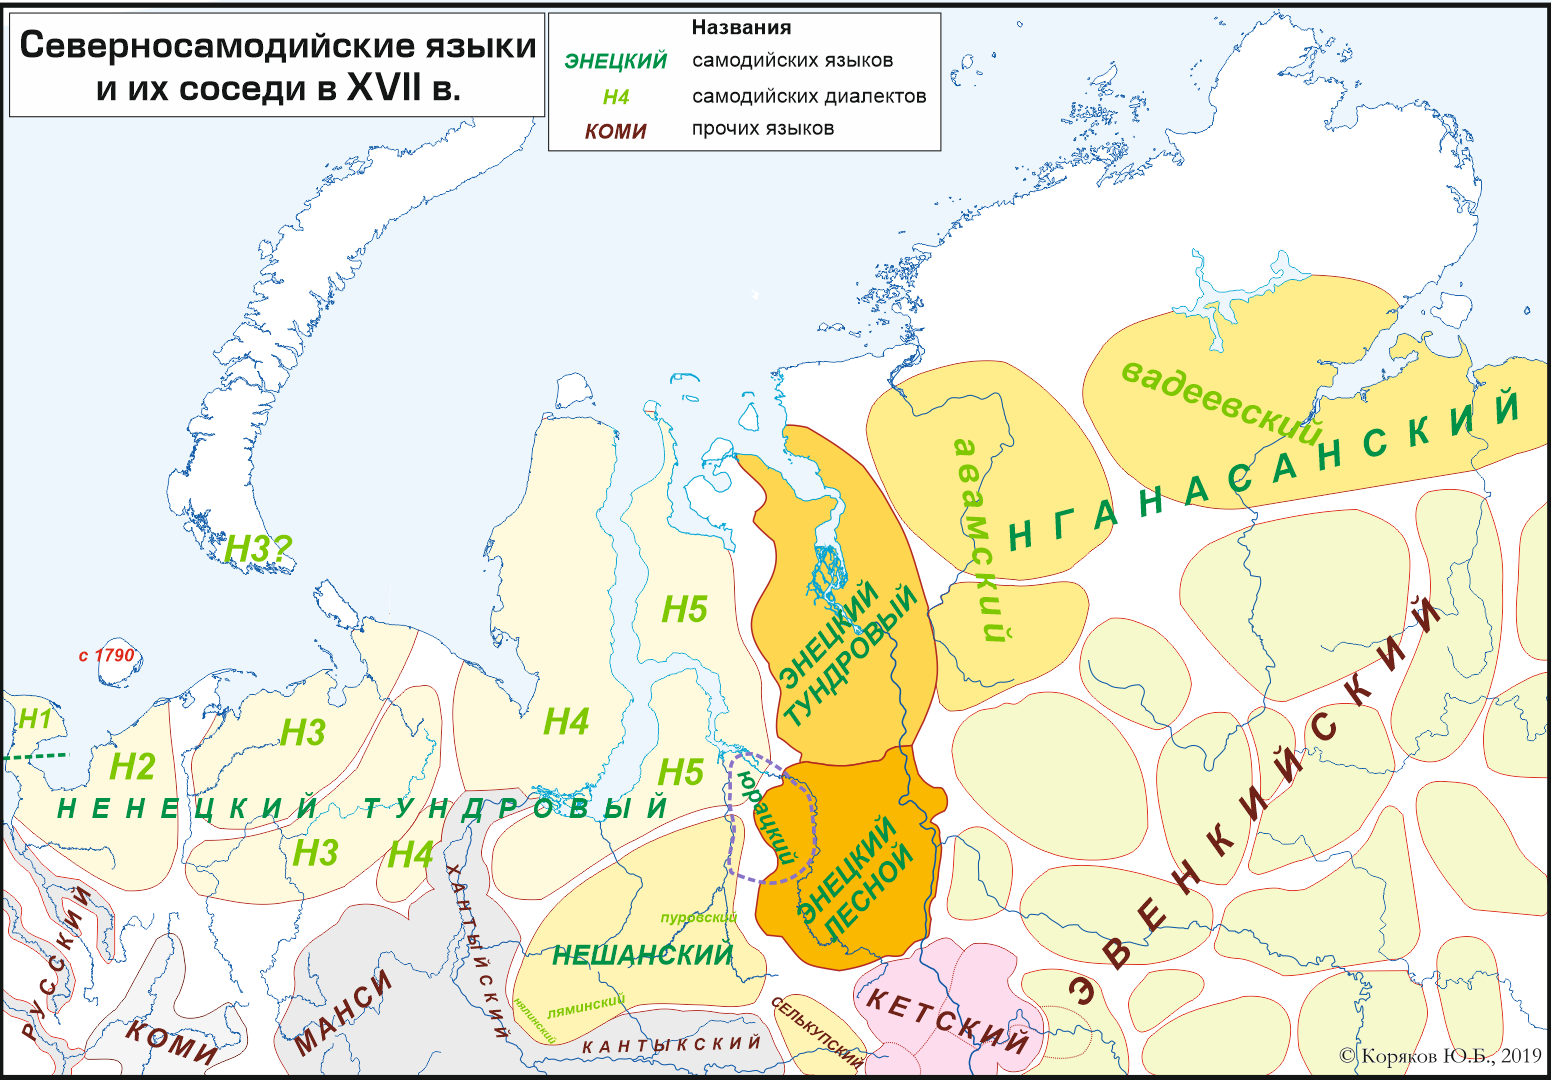 Северносамодийские языки в XVII в.